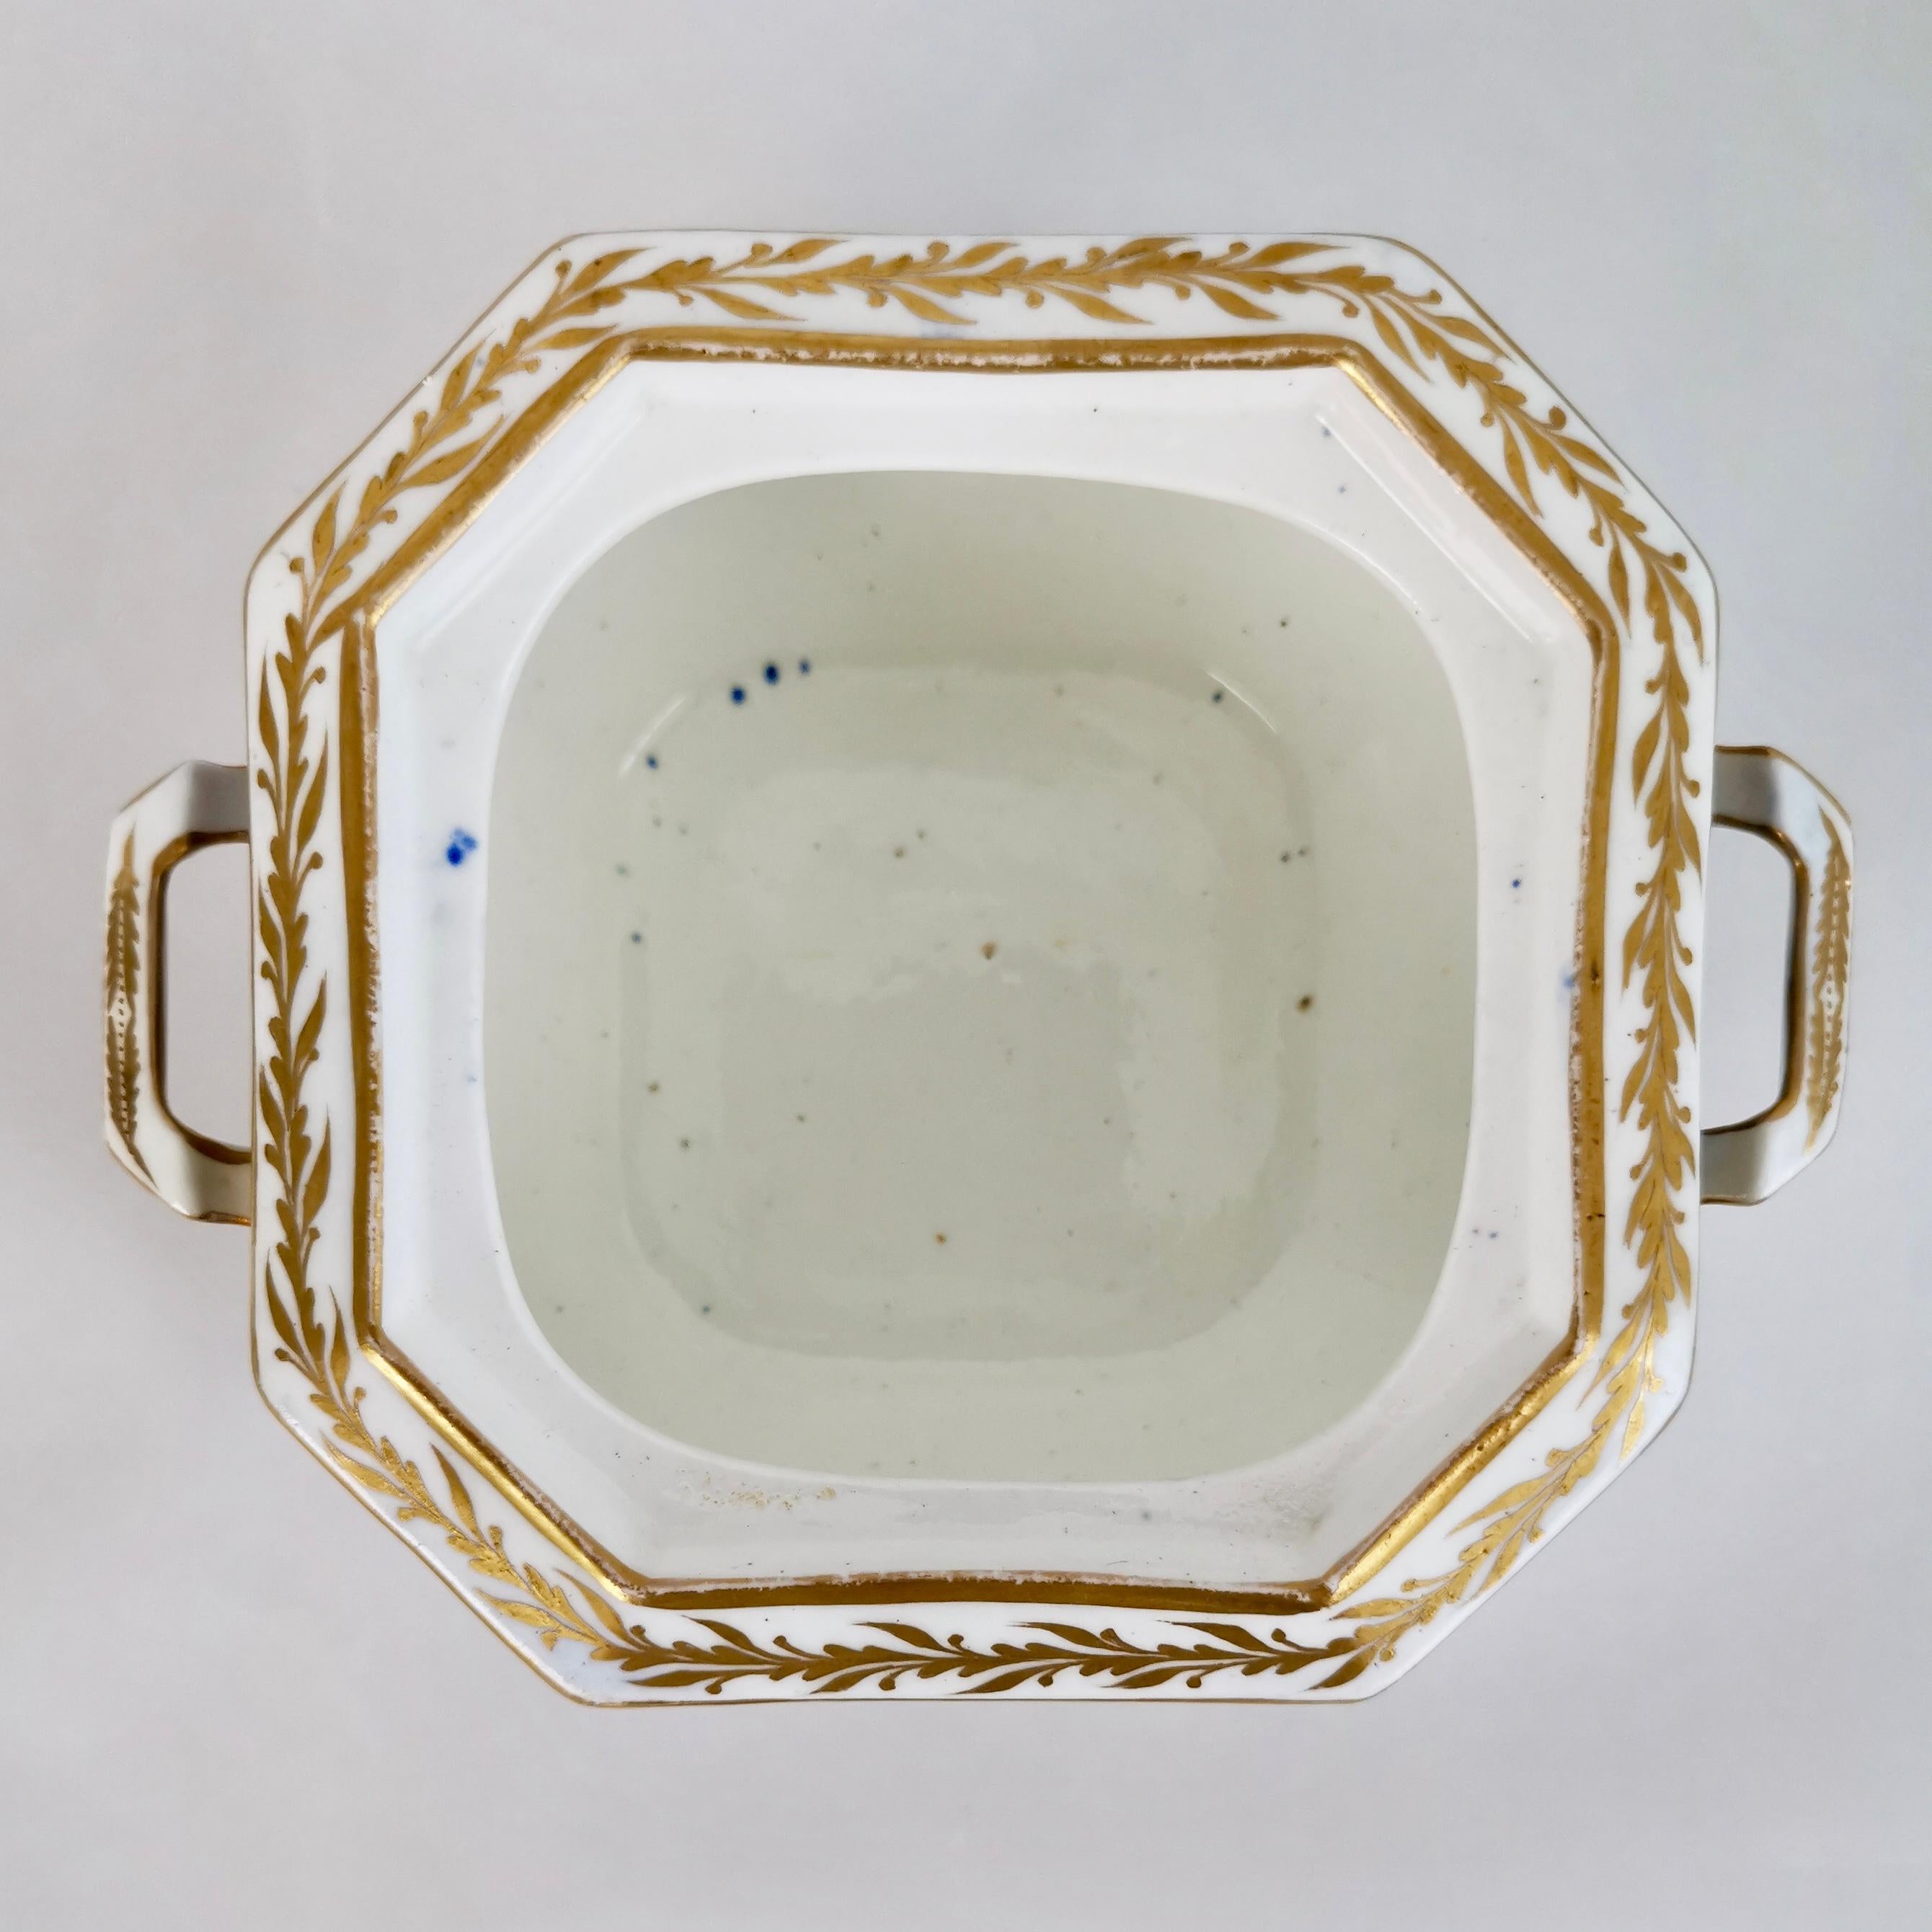 Spode Tea Service, Felspar Porcelain White and Cobalt Blue, Regency 1821-1825 6